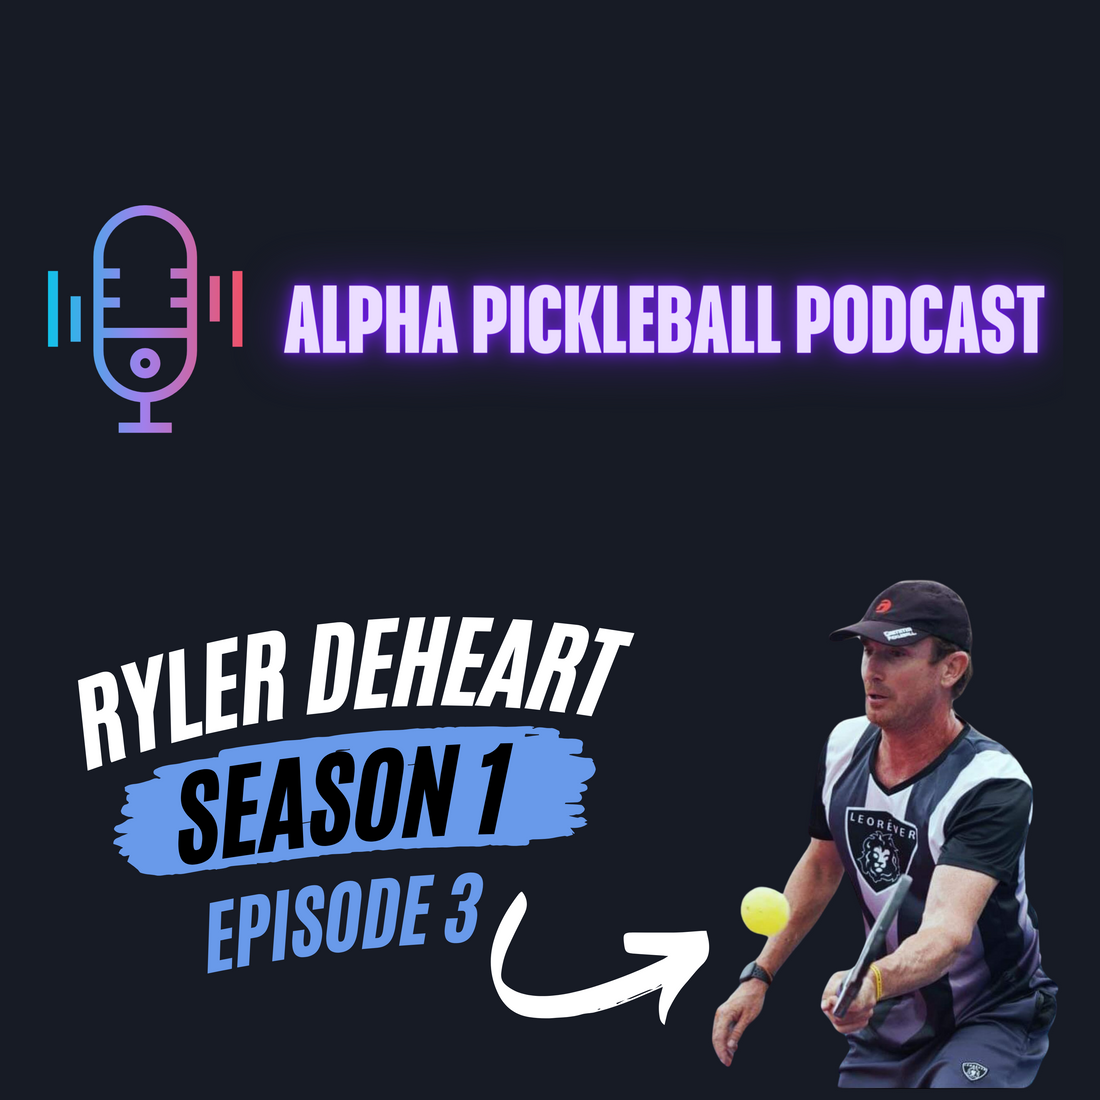 Alpha Pickleball Podcast Season 1 Episode 3 (Ryler Deheart Pro Pickleball Player)